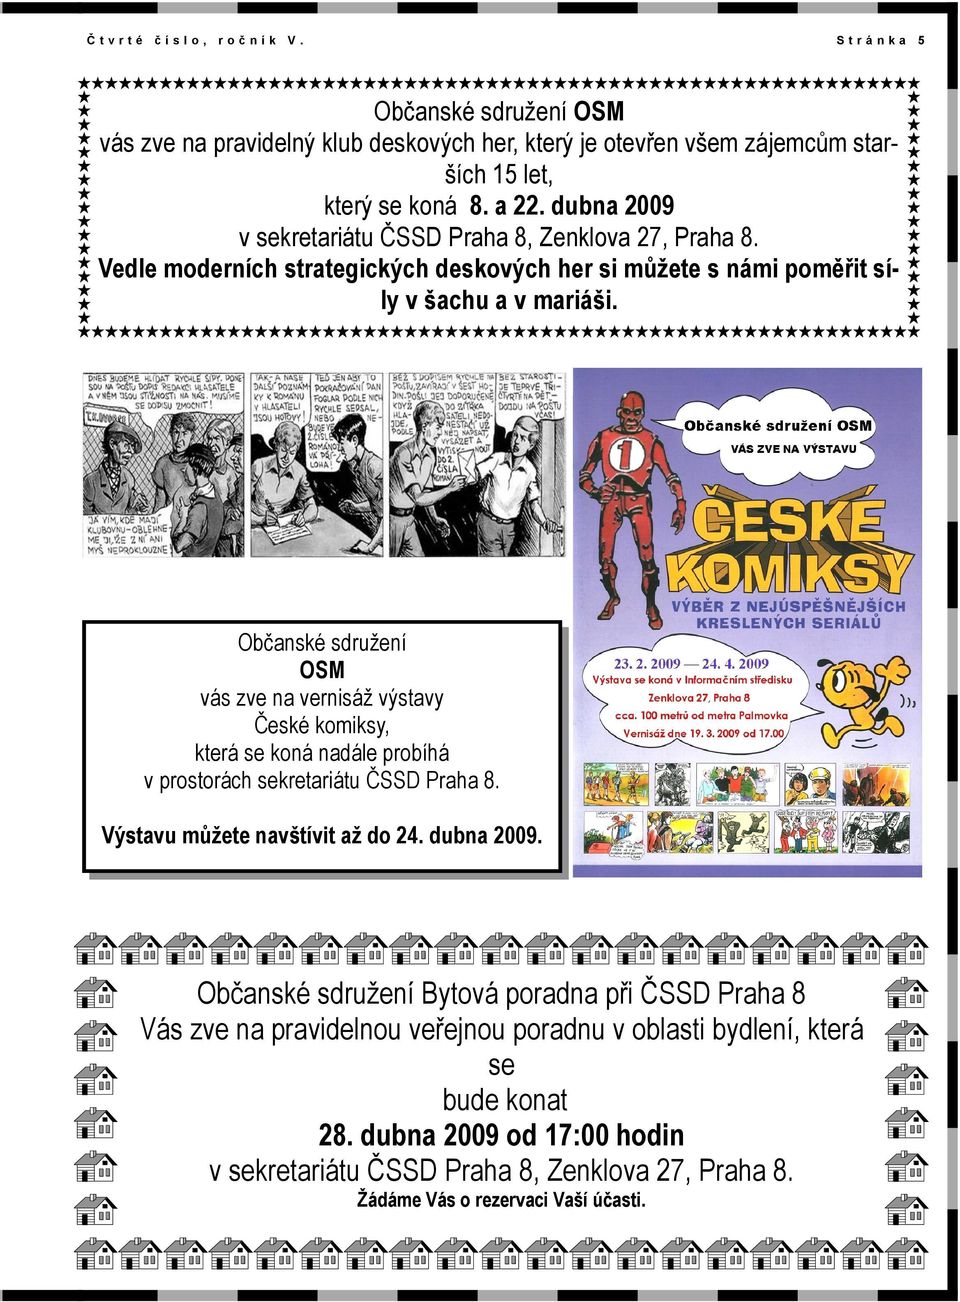 Občanské sdružení OSM vás zve na vernisáž výstavy České komiksy, která se koná nadále probíhá v prostorách sekretariátu ČSSD Praha 8. Výstavu můžete navštívit až do 24. dubna 2009.